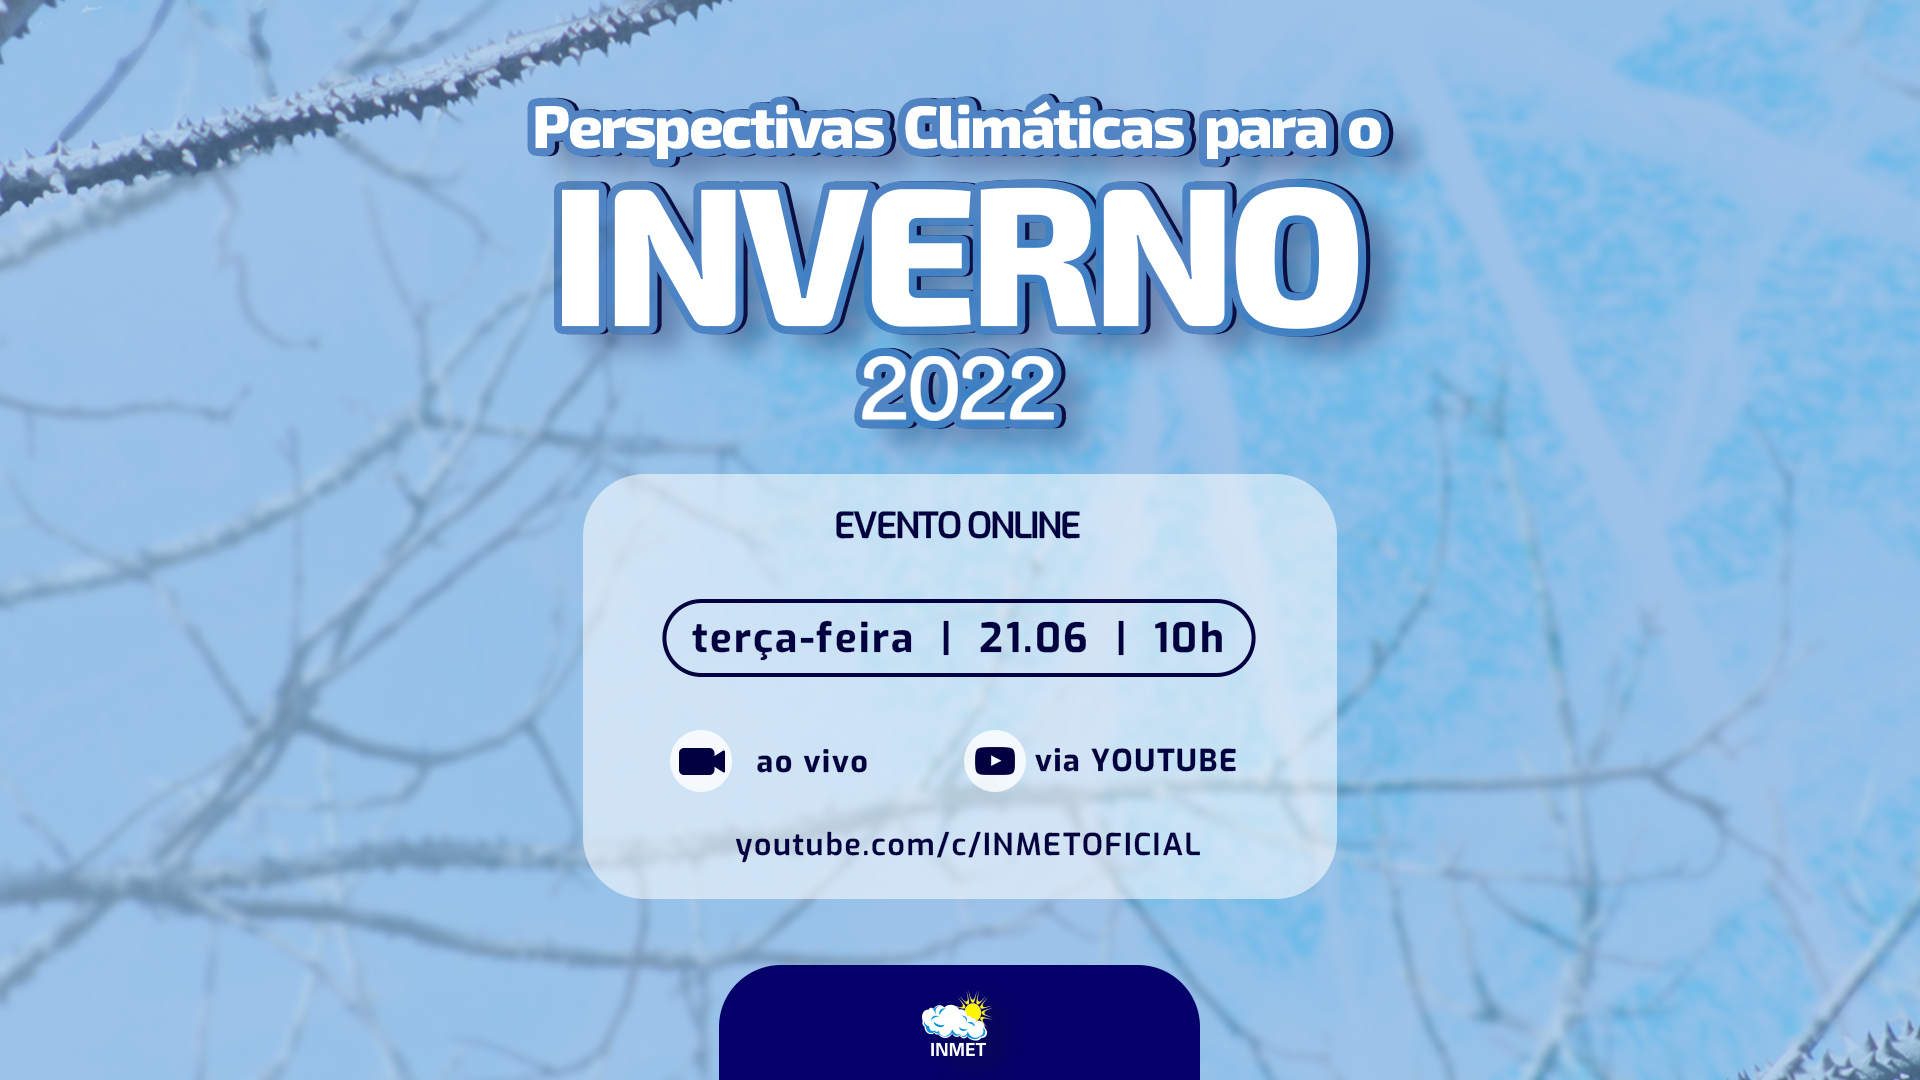 Convite - Perspectivas climáticas para o Inverno 2022